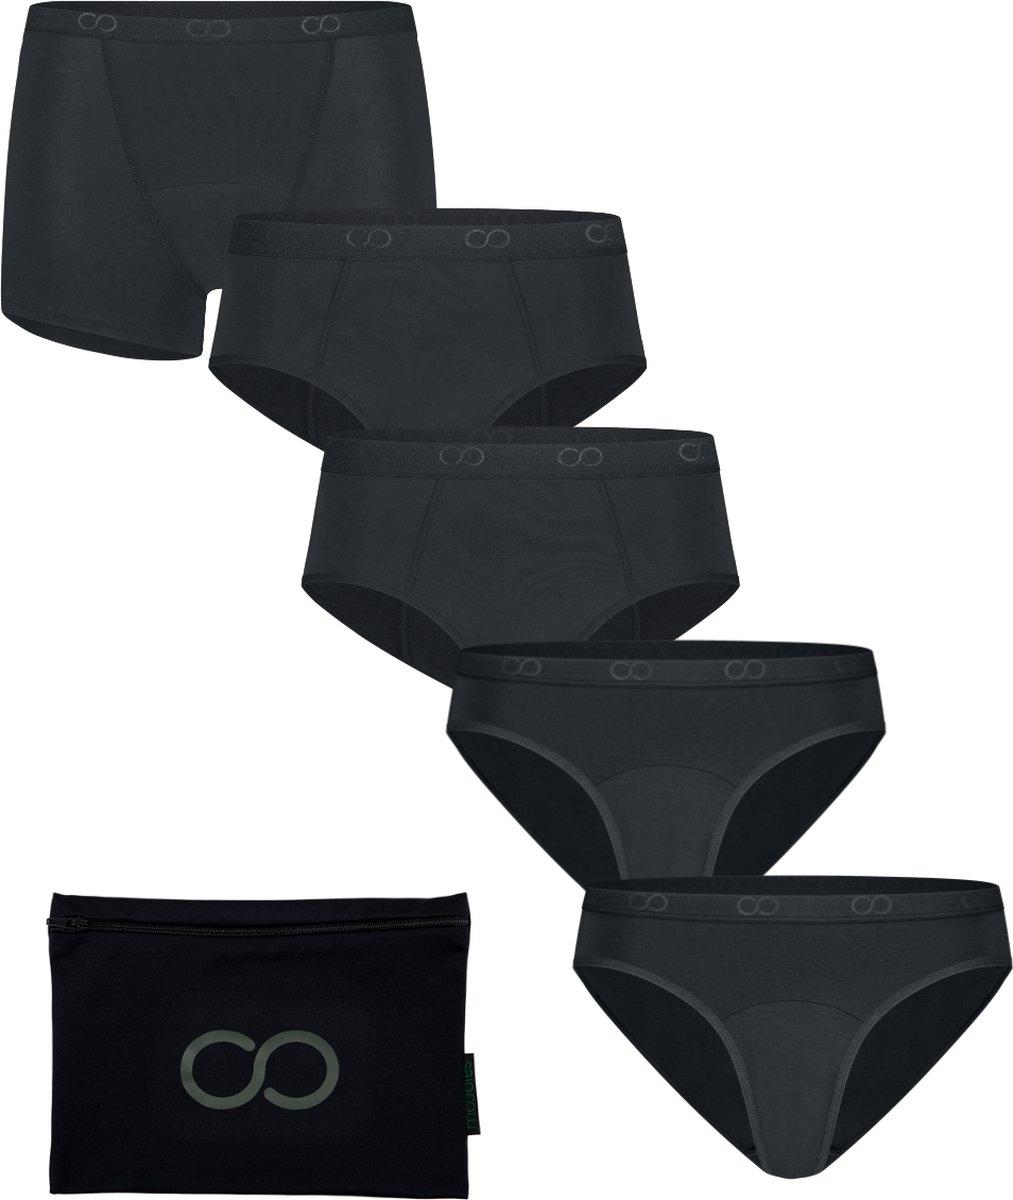 Moodies menstruatie & incontinentie ondergoed - bundel bamboe - 5 stuks - dames - zwart - maat XL - period underwear